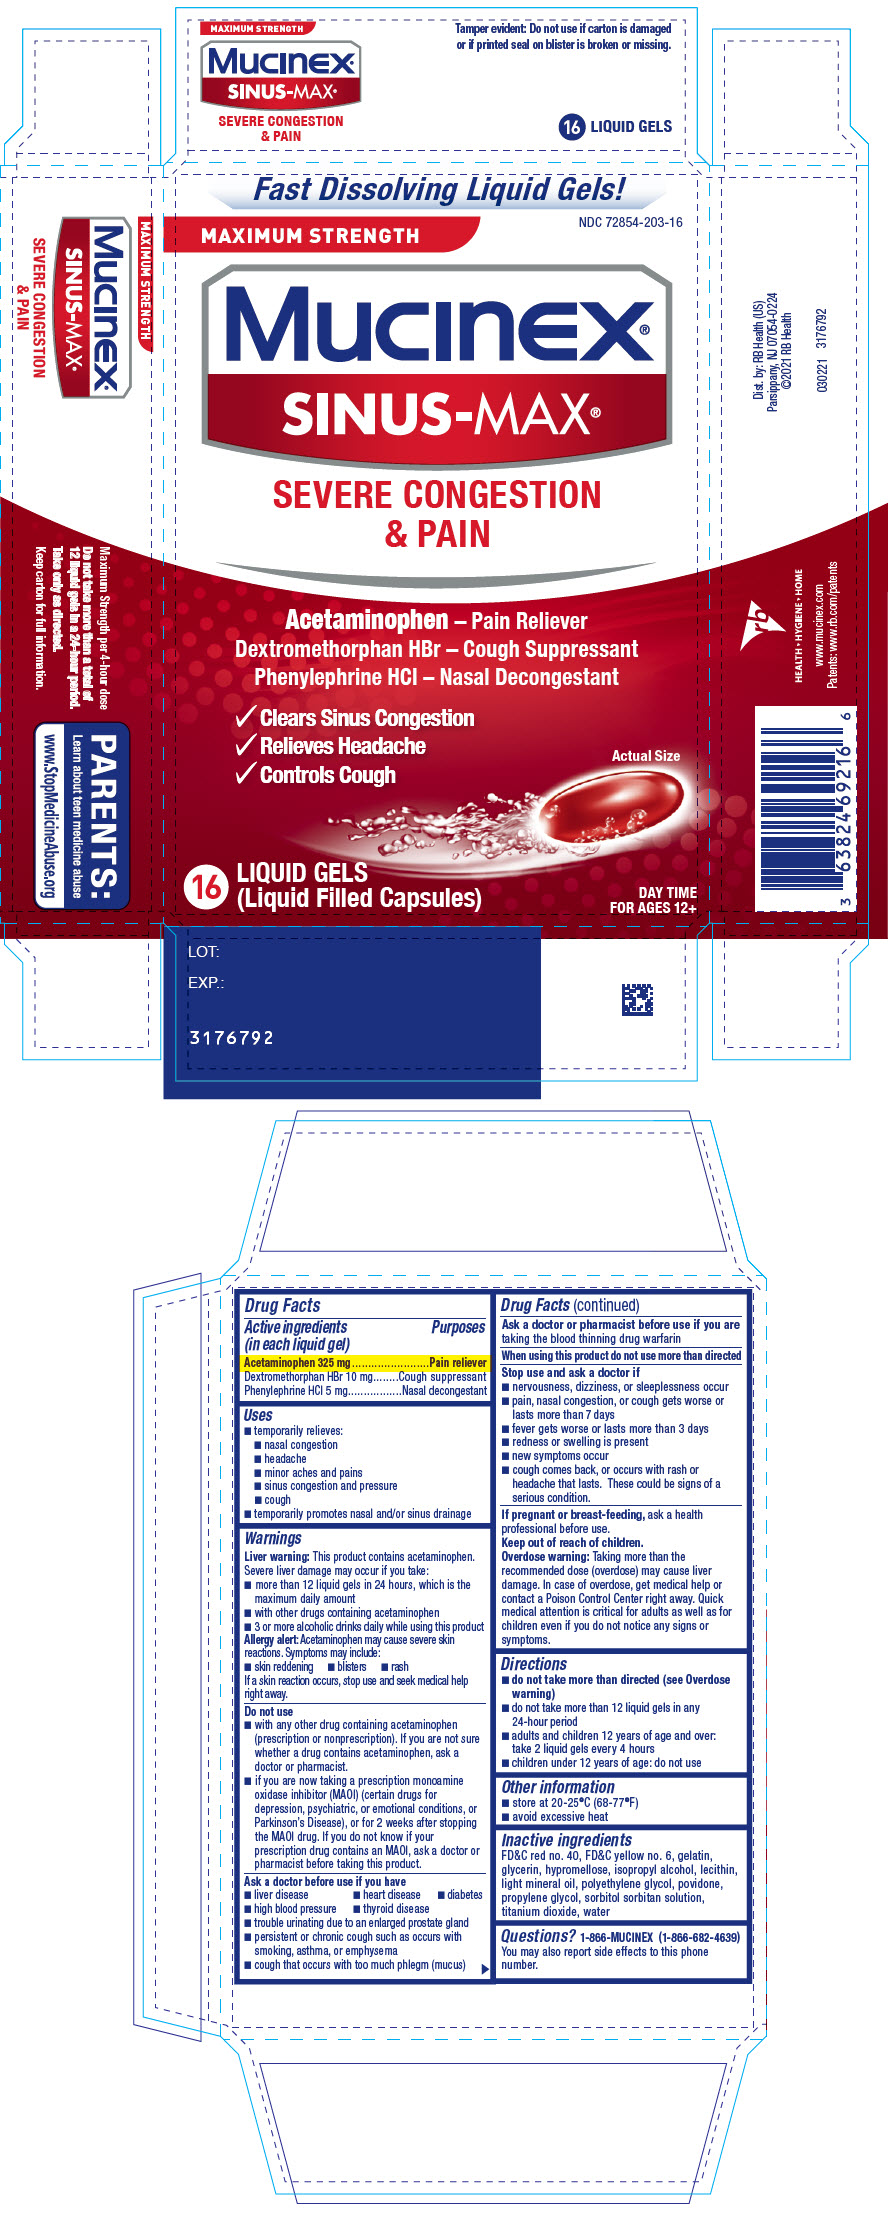 PRINCIPAL DISPLAY PANEL - 16 Capsule Blister Pack Carton